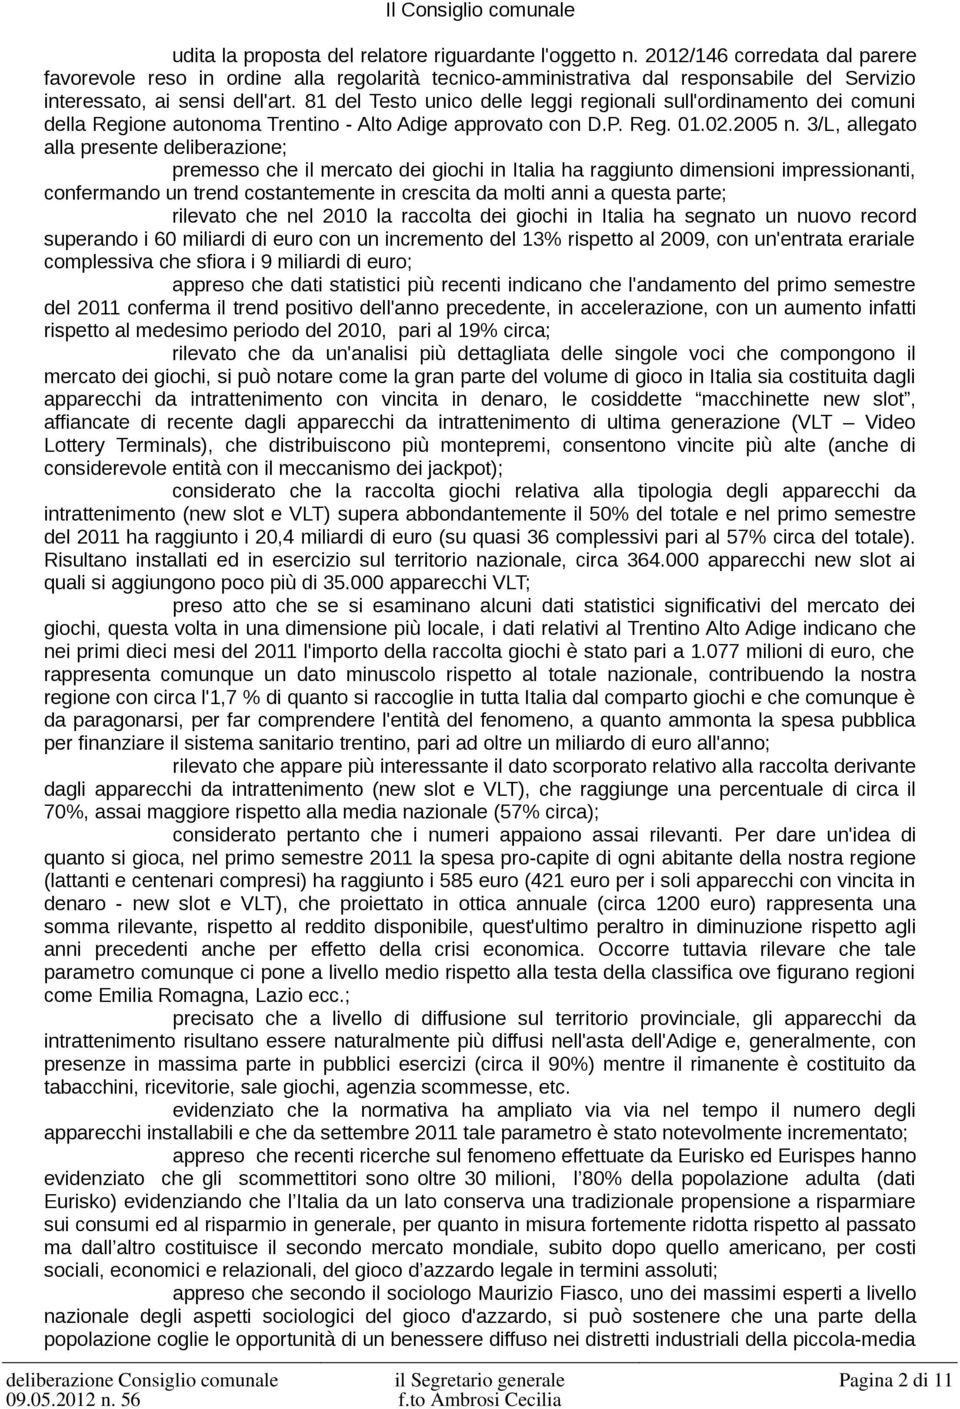 81 del Testo unico delle leggi regionali sull'ordinamento dei comuni della Regione autonoma Trentino - Alto Adige approvato con D.P. Reg. 01.02.2005 n.